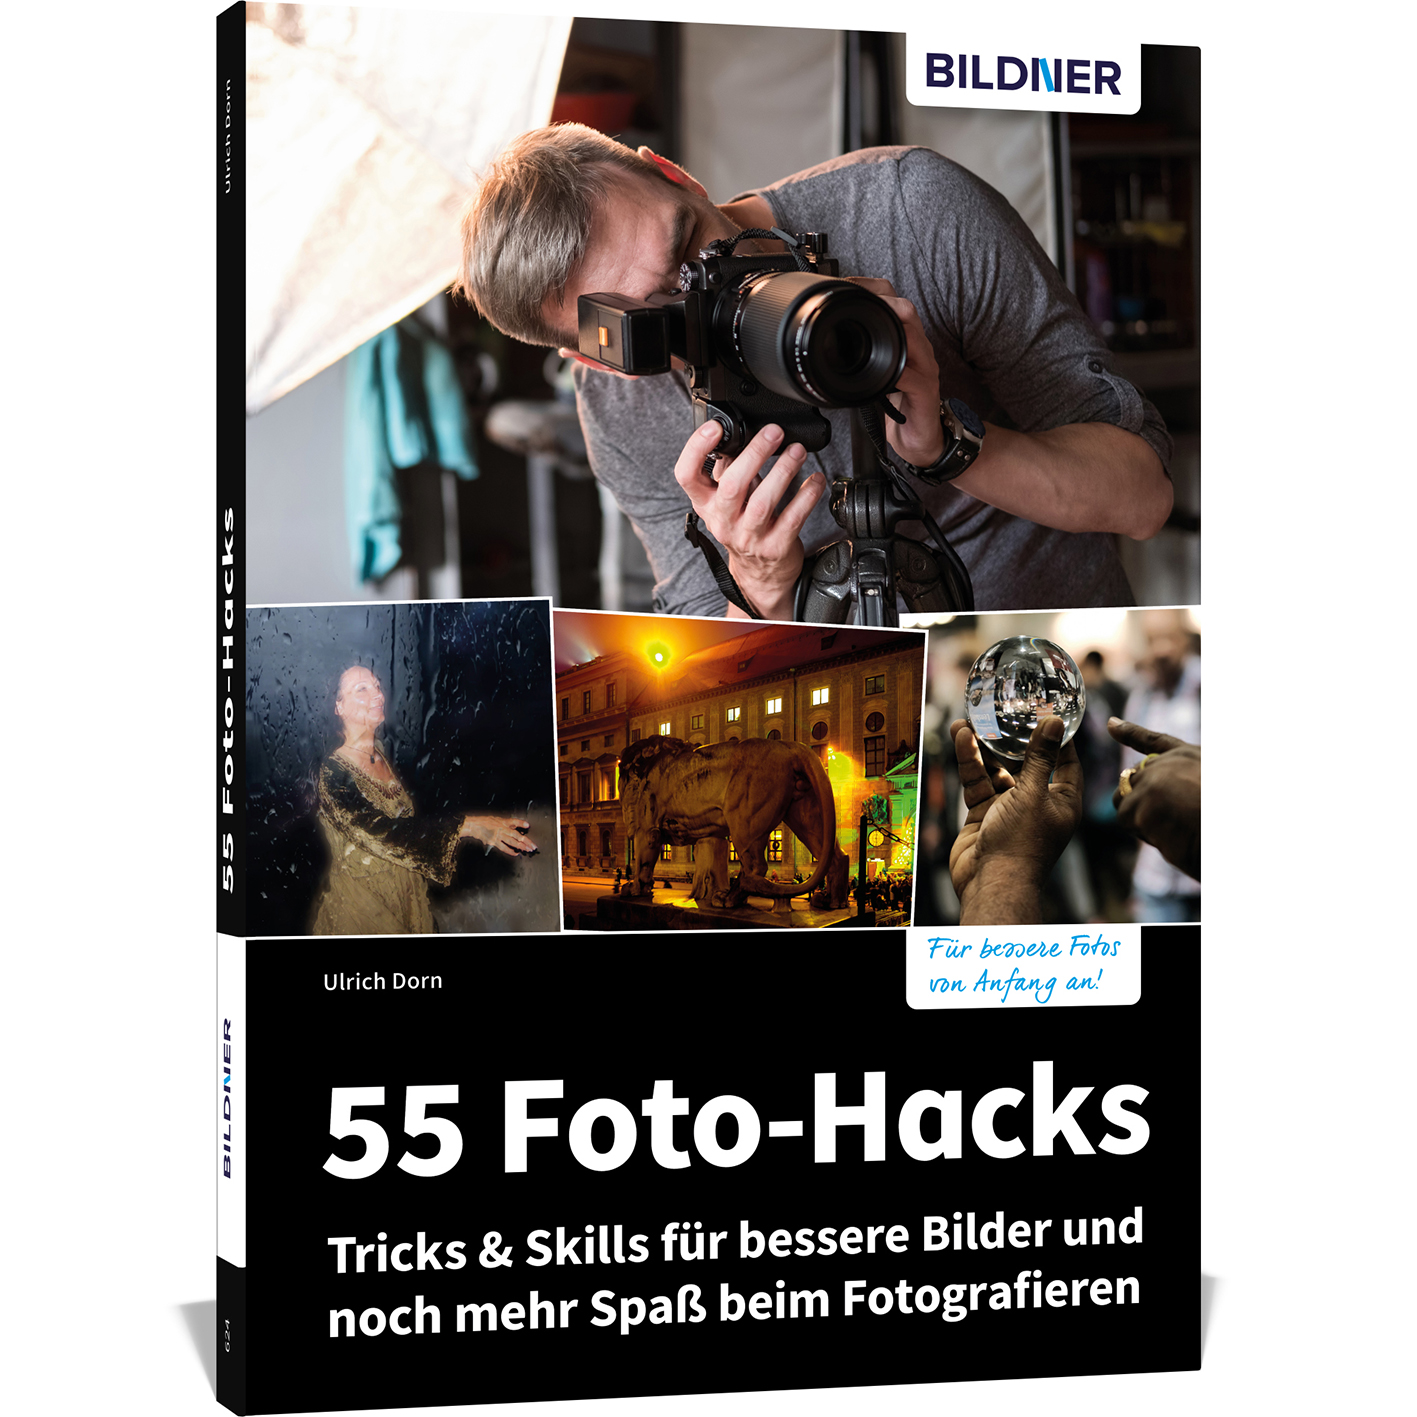 55 Foto-Hacks – mehr Bilder Tricks Spaß Skills beim bessere & noch und für Fotografieren